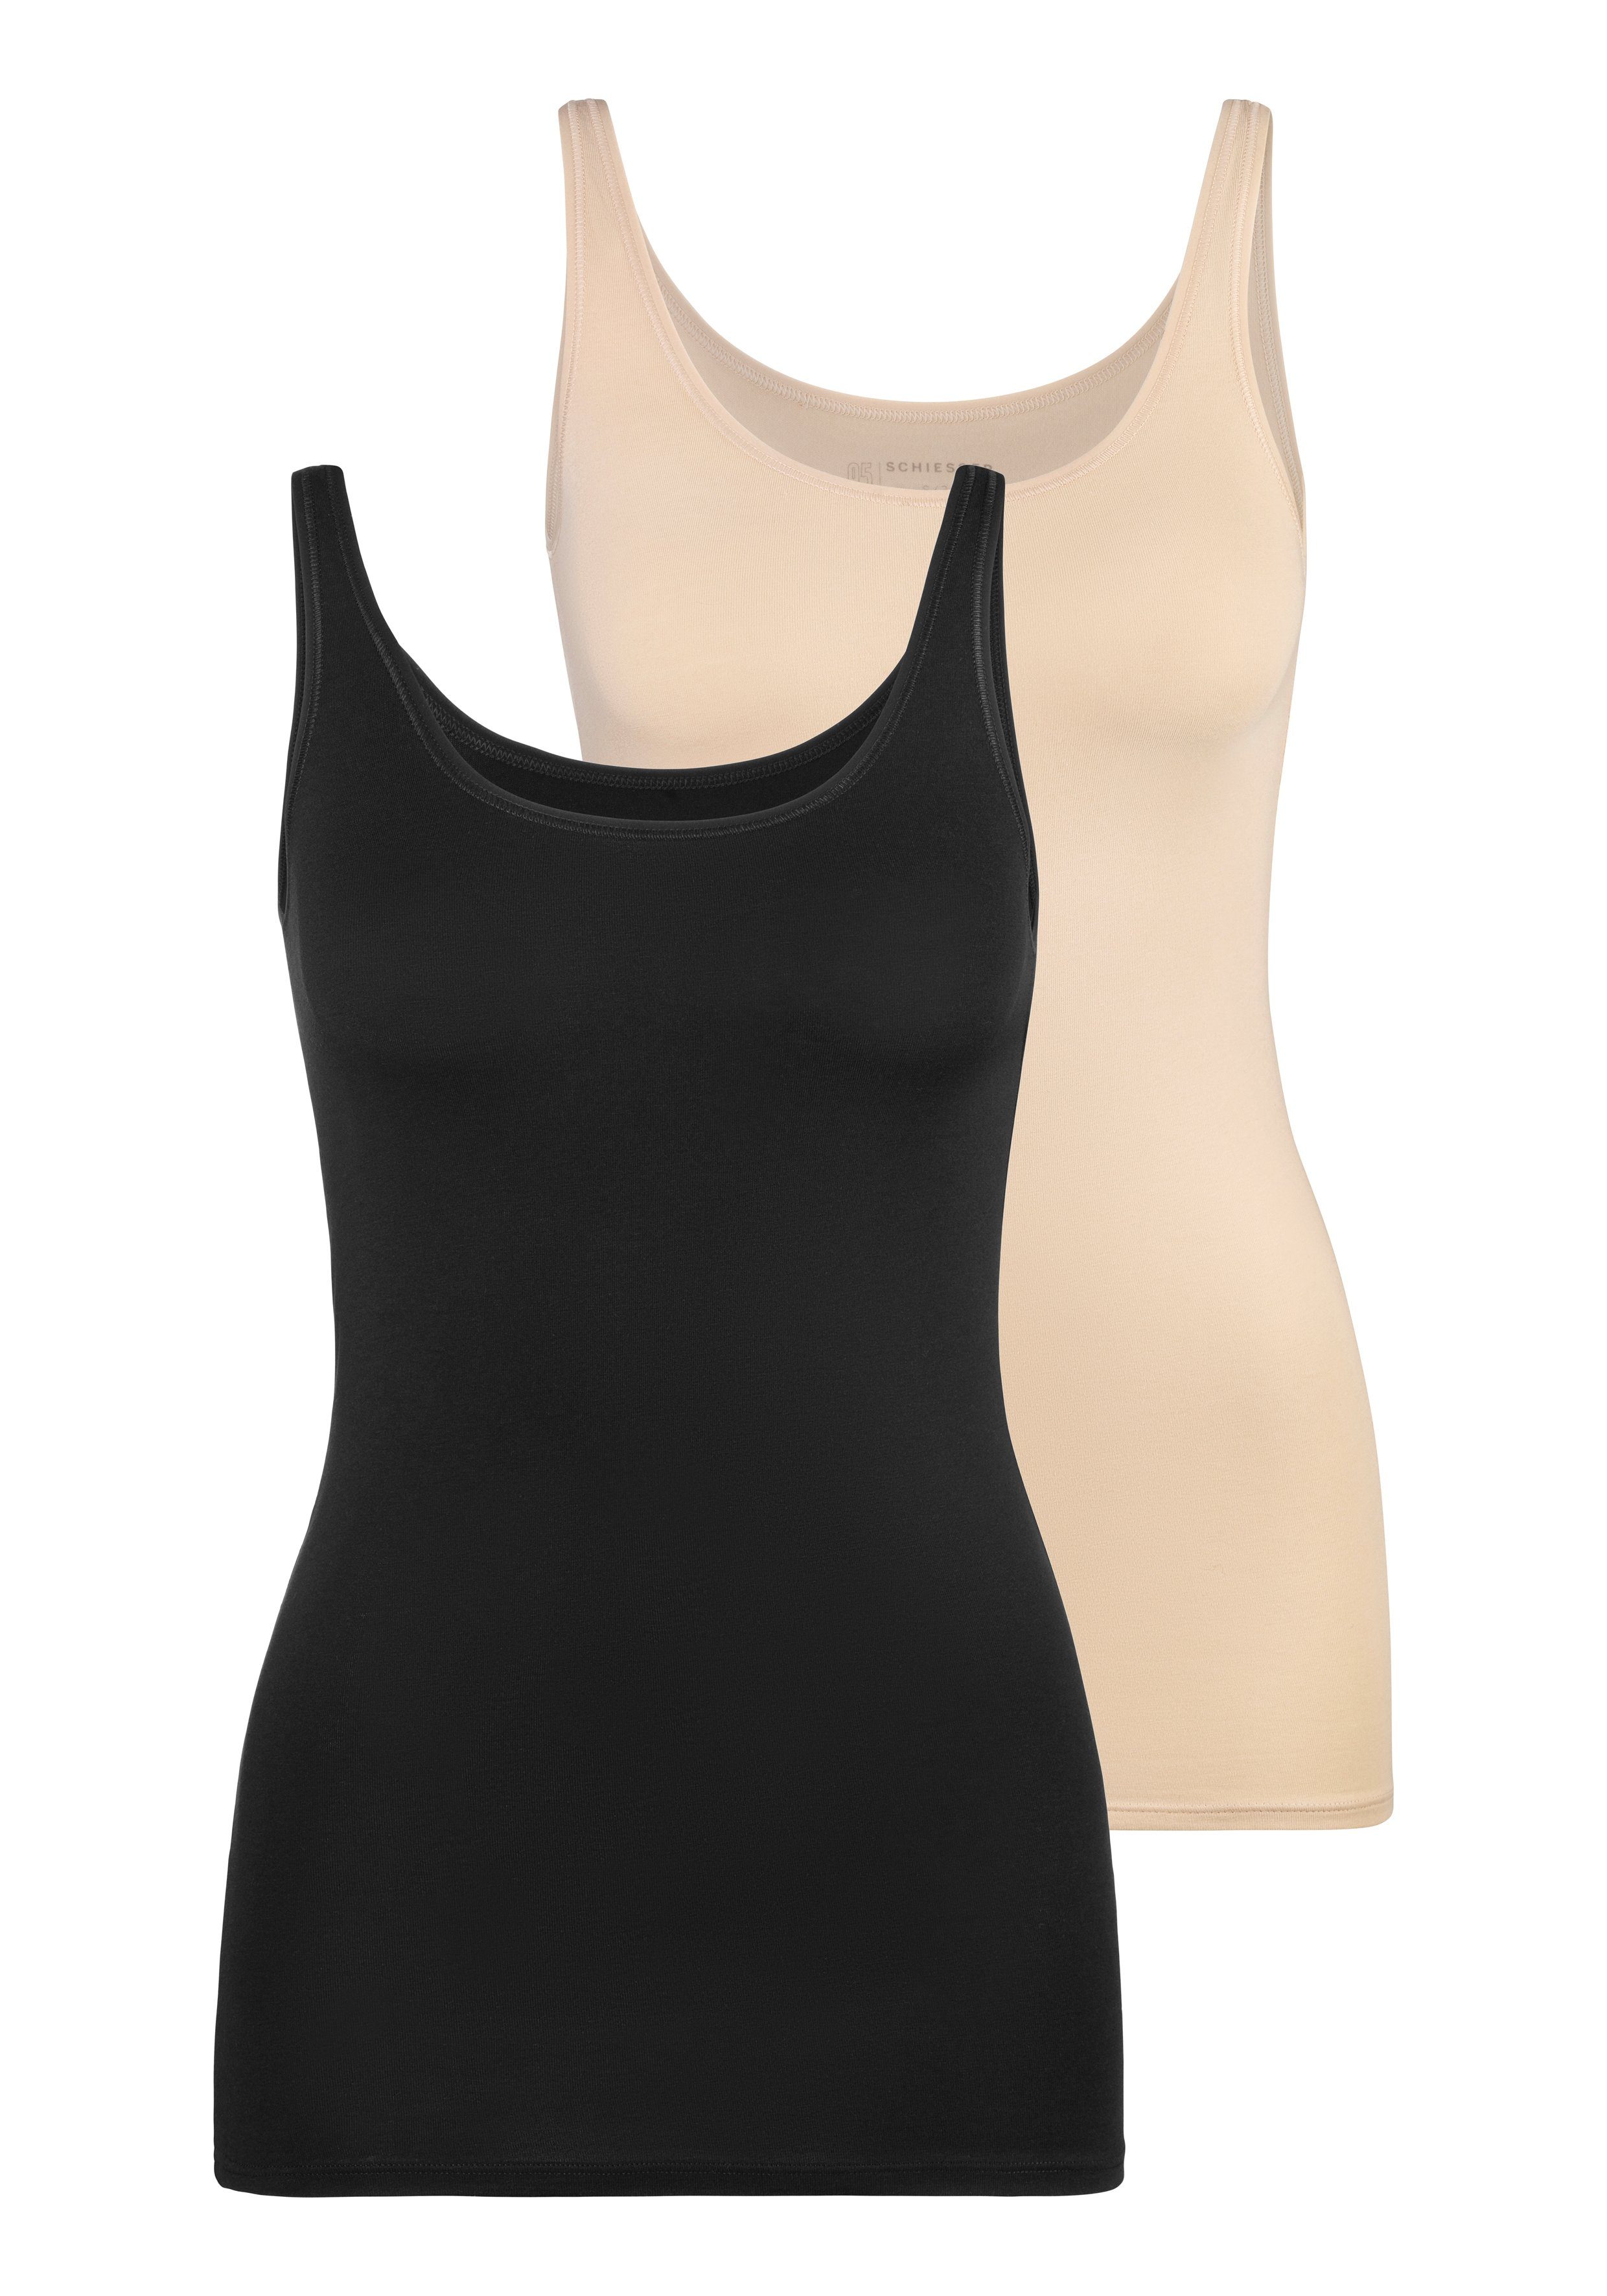 Schiesser Unterhemd (2er-Pack) schwarz/sand mit elastischer Single-Jersey-Qualität